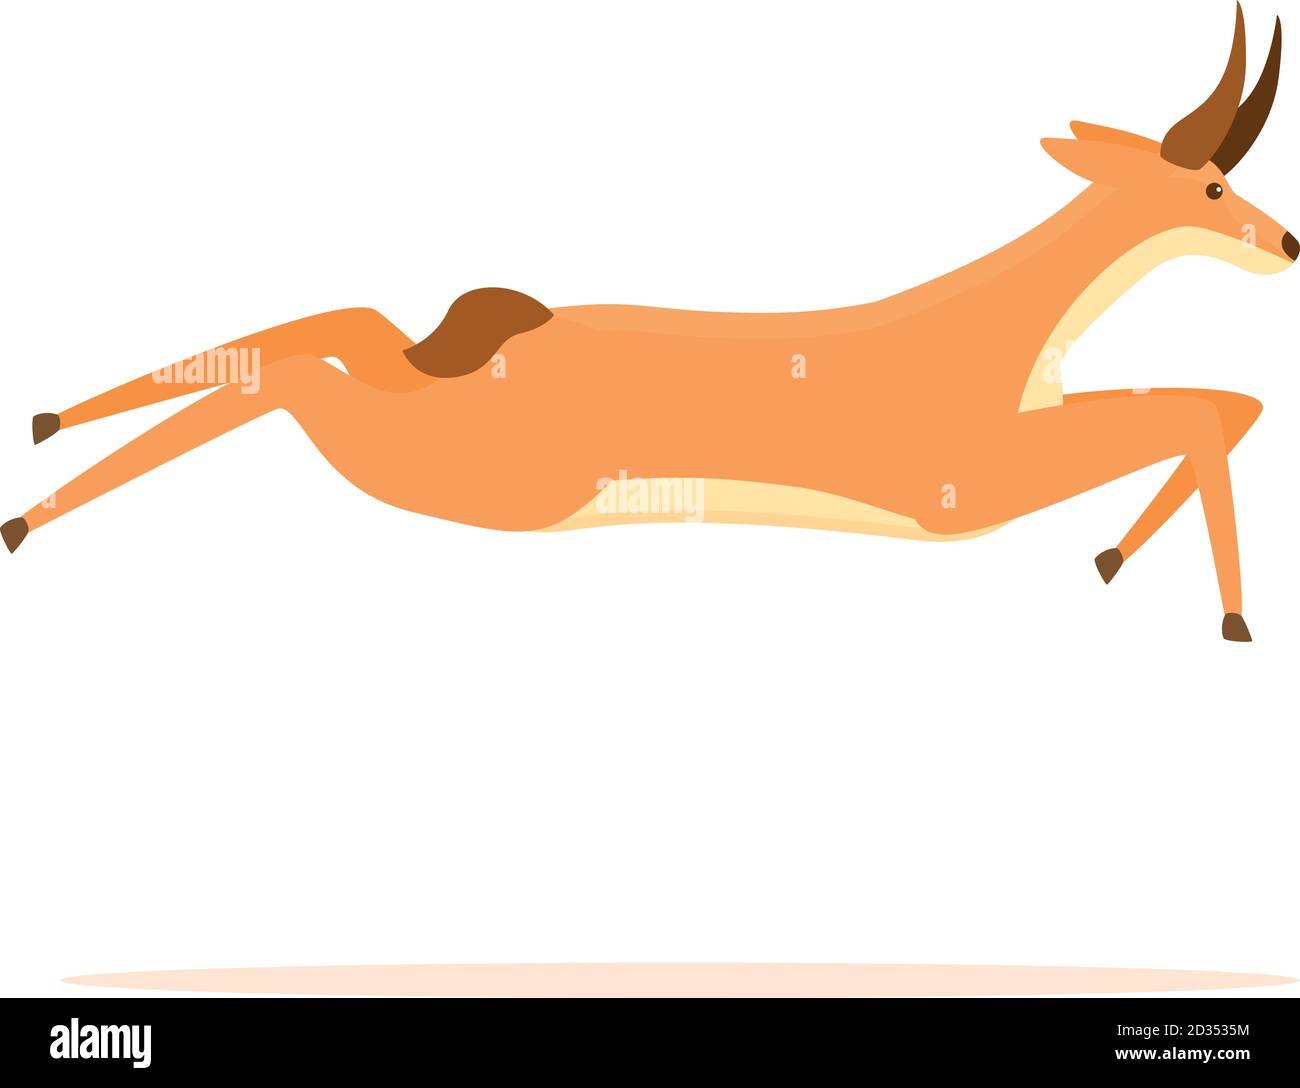 Icône de gazelle de course à pied. Dessin animé de l'icône de vecteur gazelle en cours d'exécution pour le web design isolé sur fond blanc Illustration de Vecteur